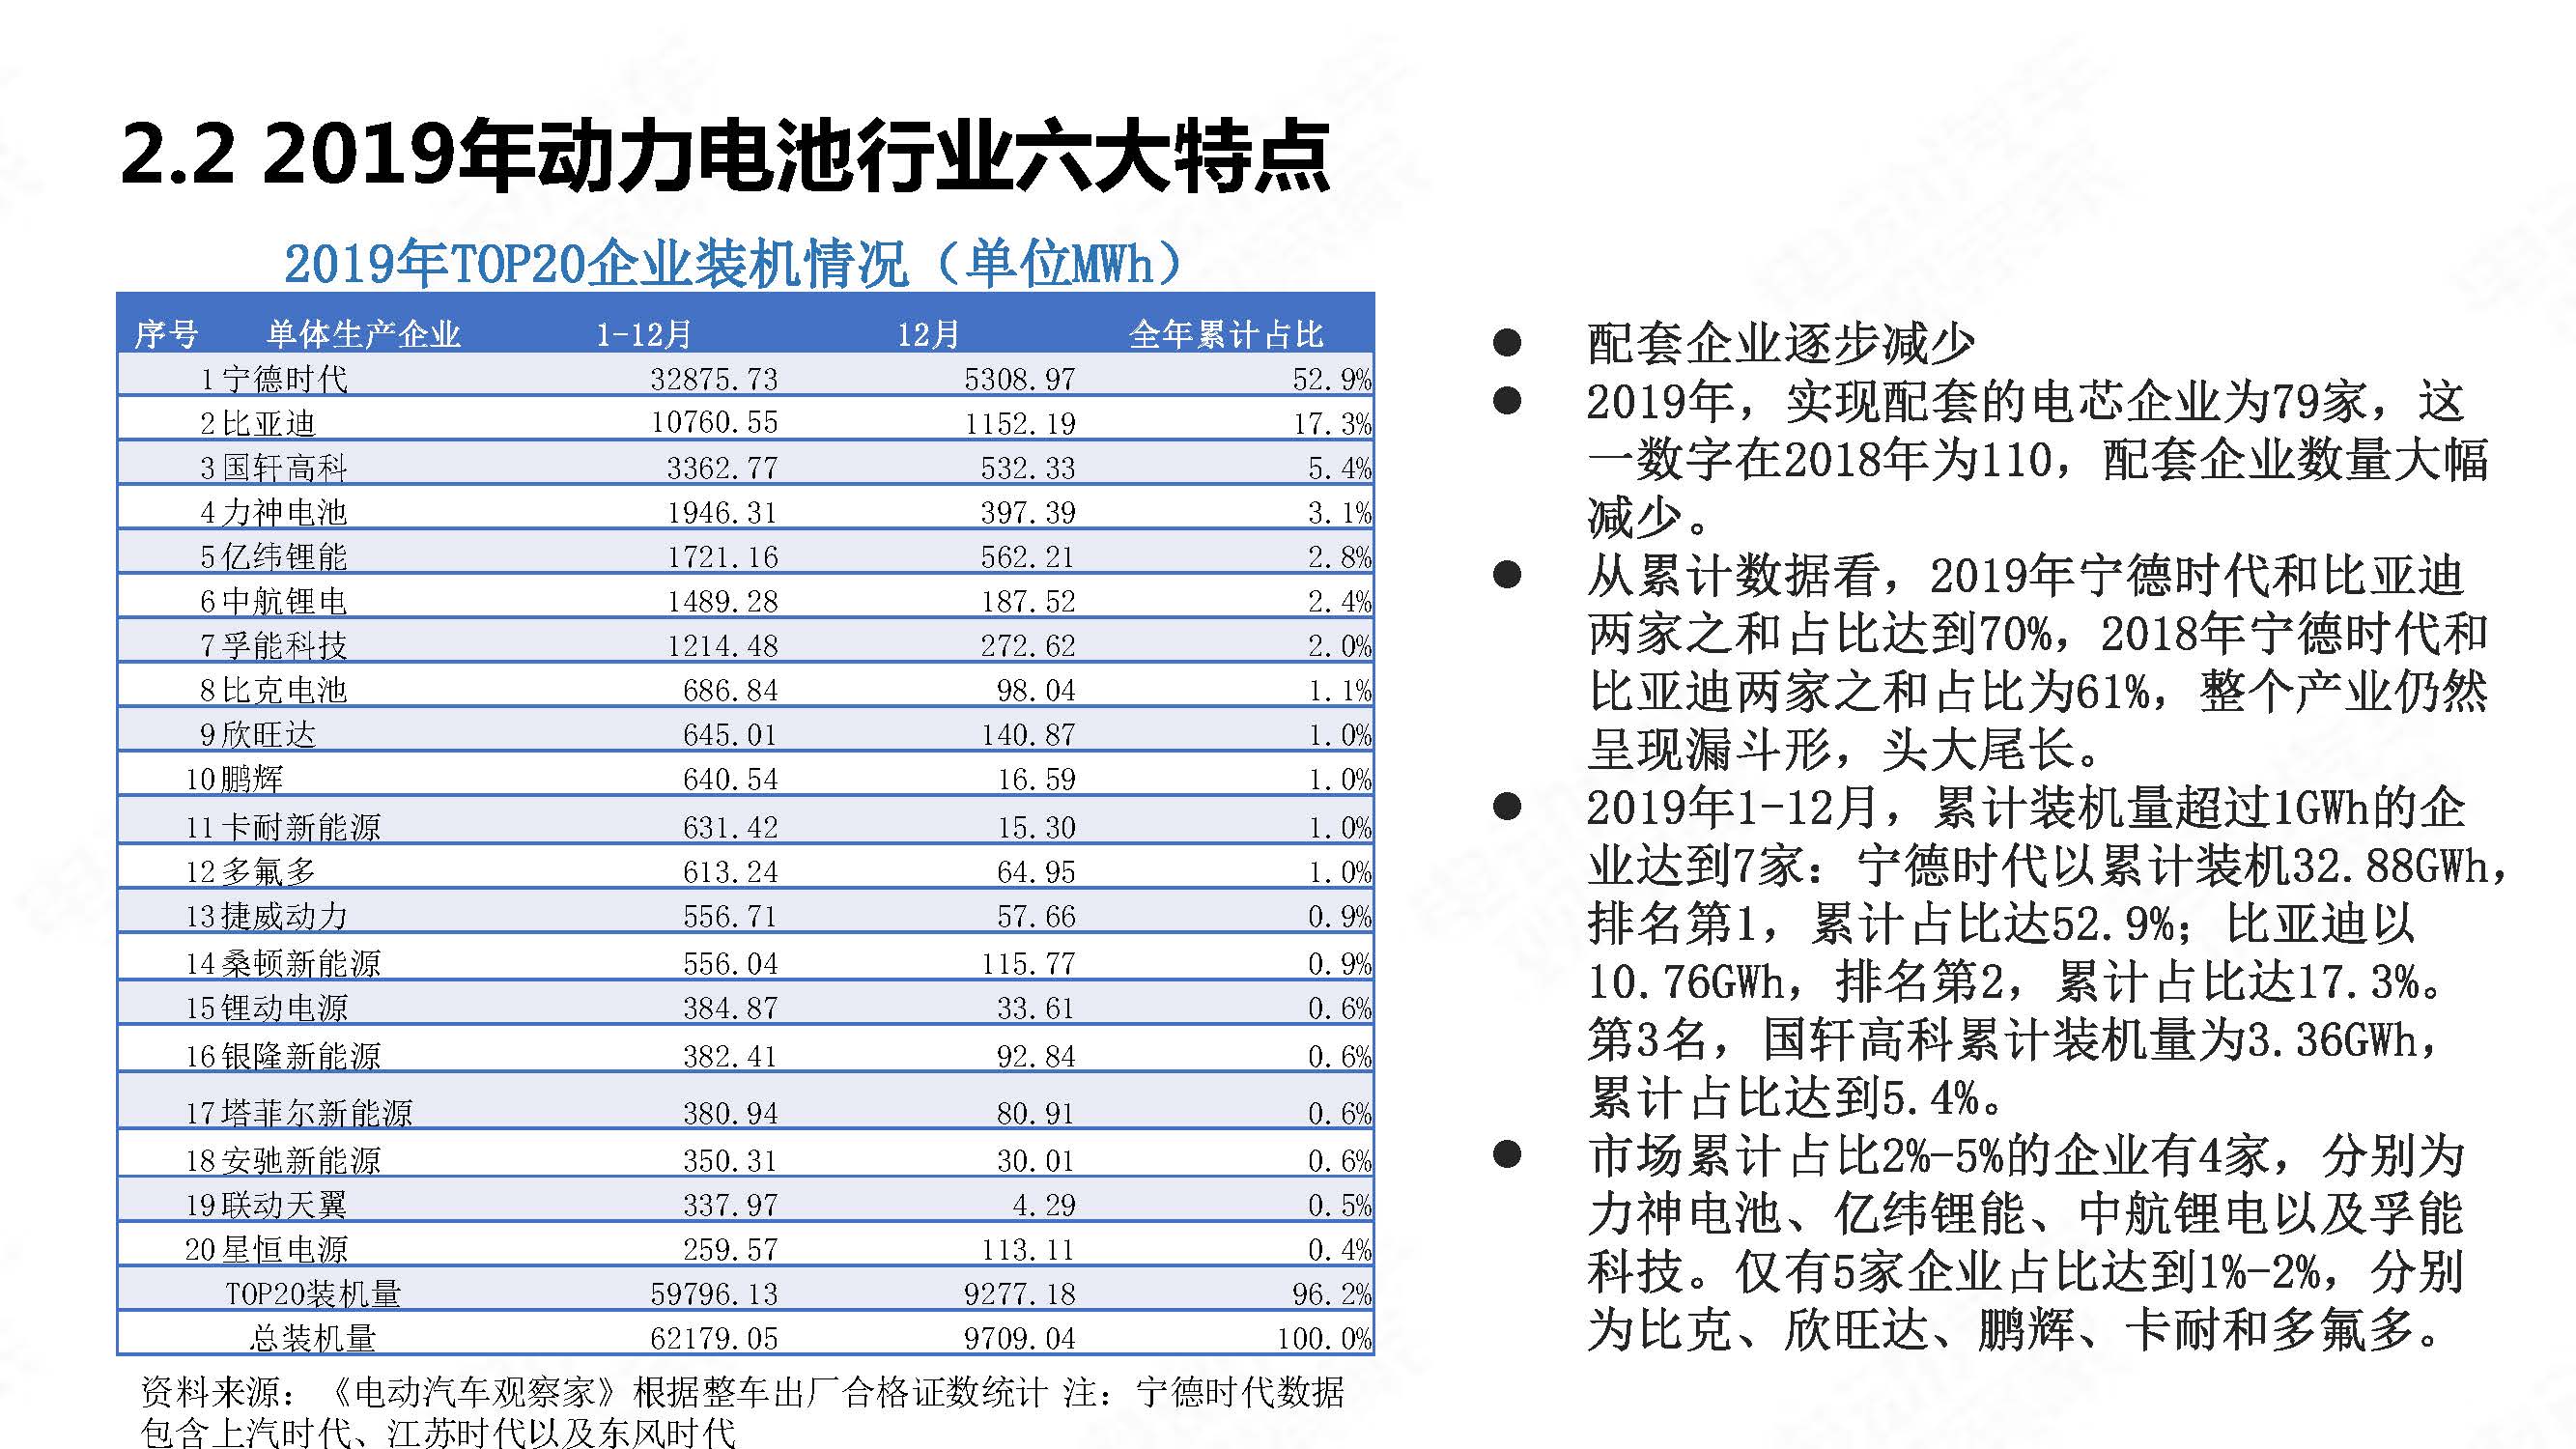 中国新能源汽车产业年度观察2020 简版_页面_30